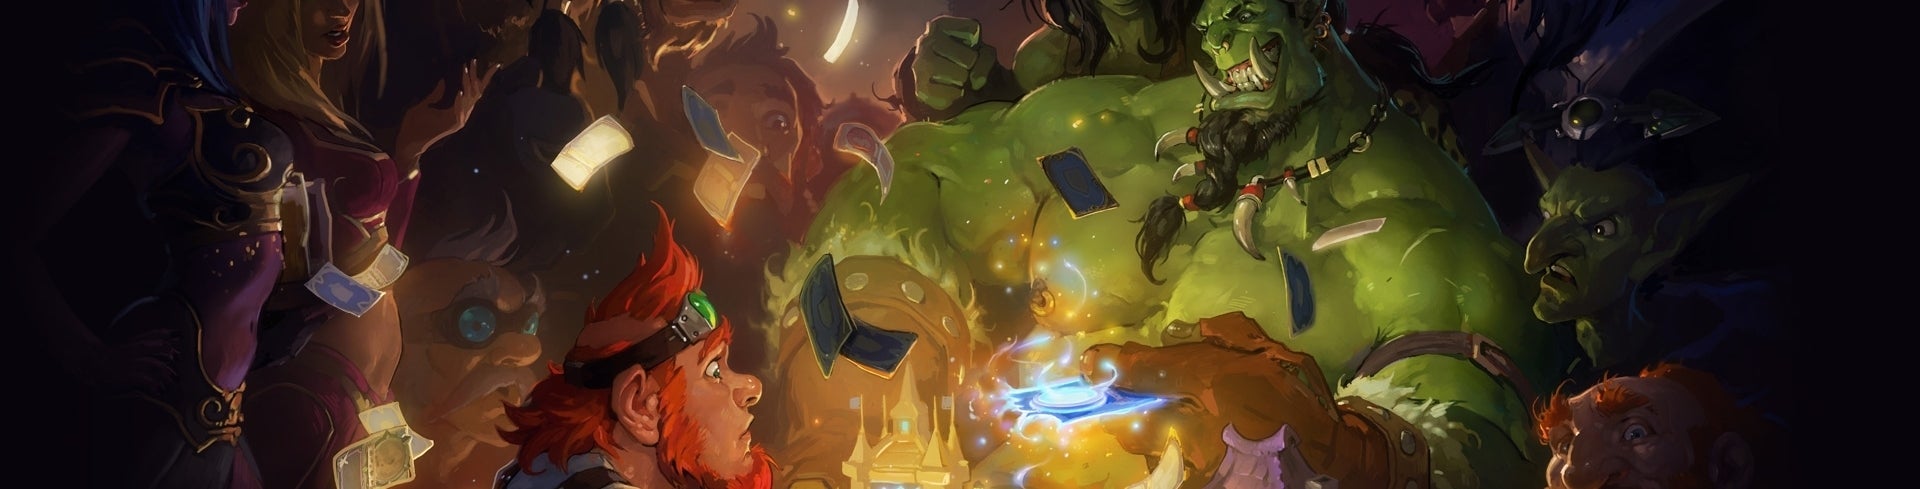 Obrazki dla Wrażenia z gry Hearthstone: Heroes of Warcraft od Blizzarda